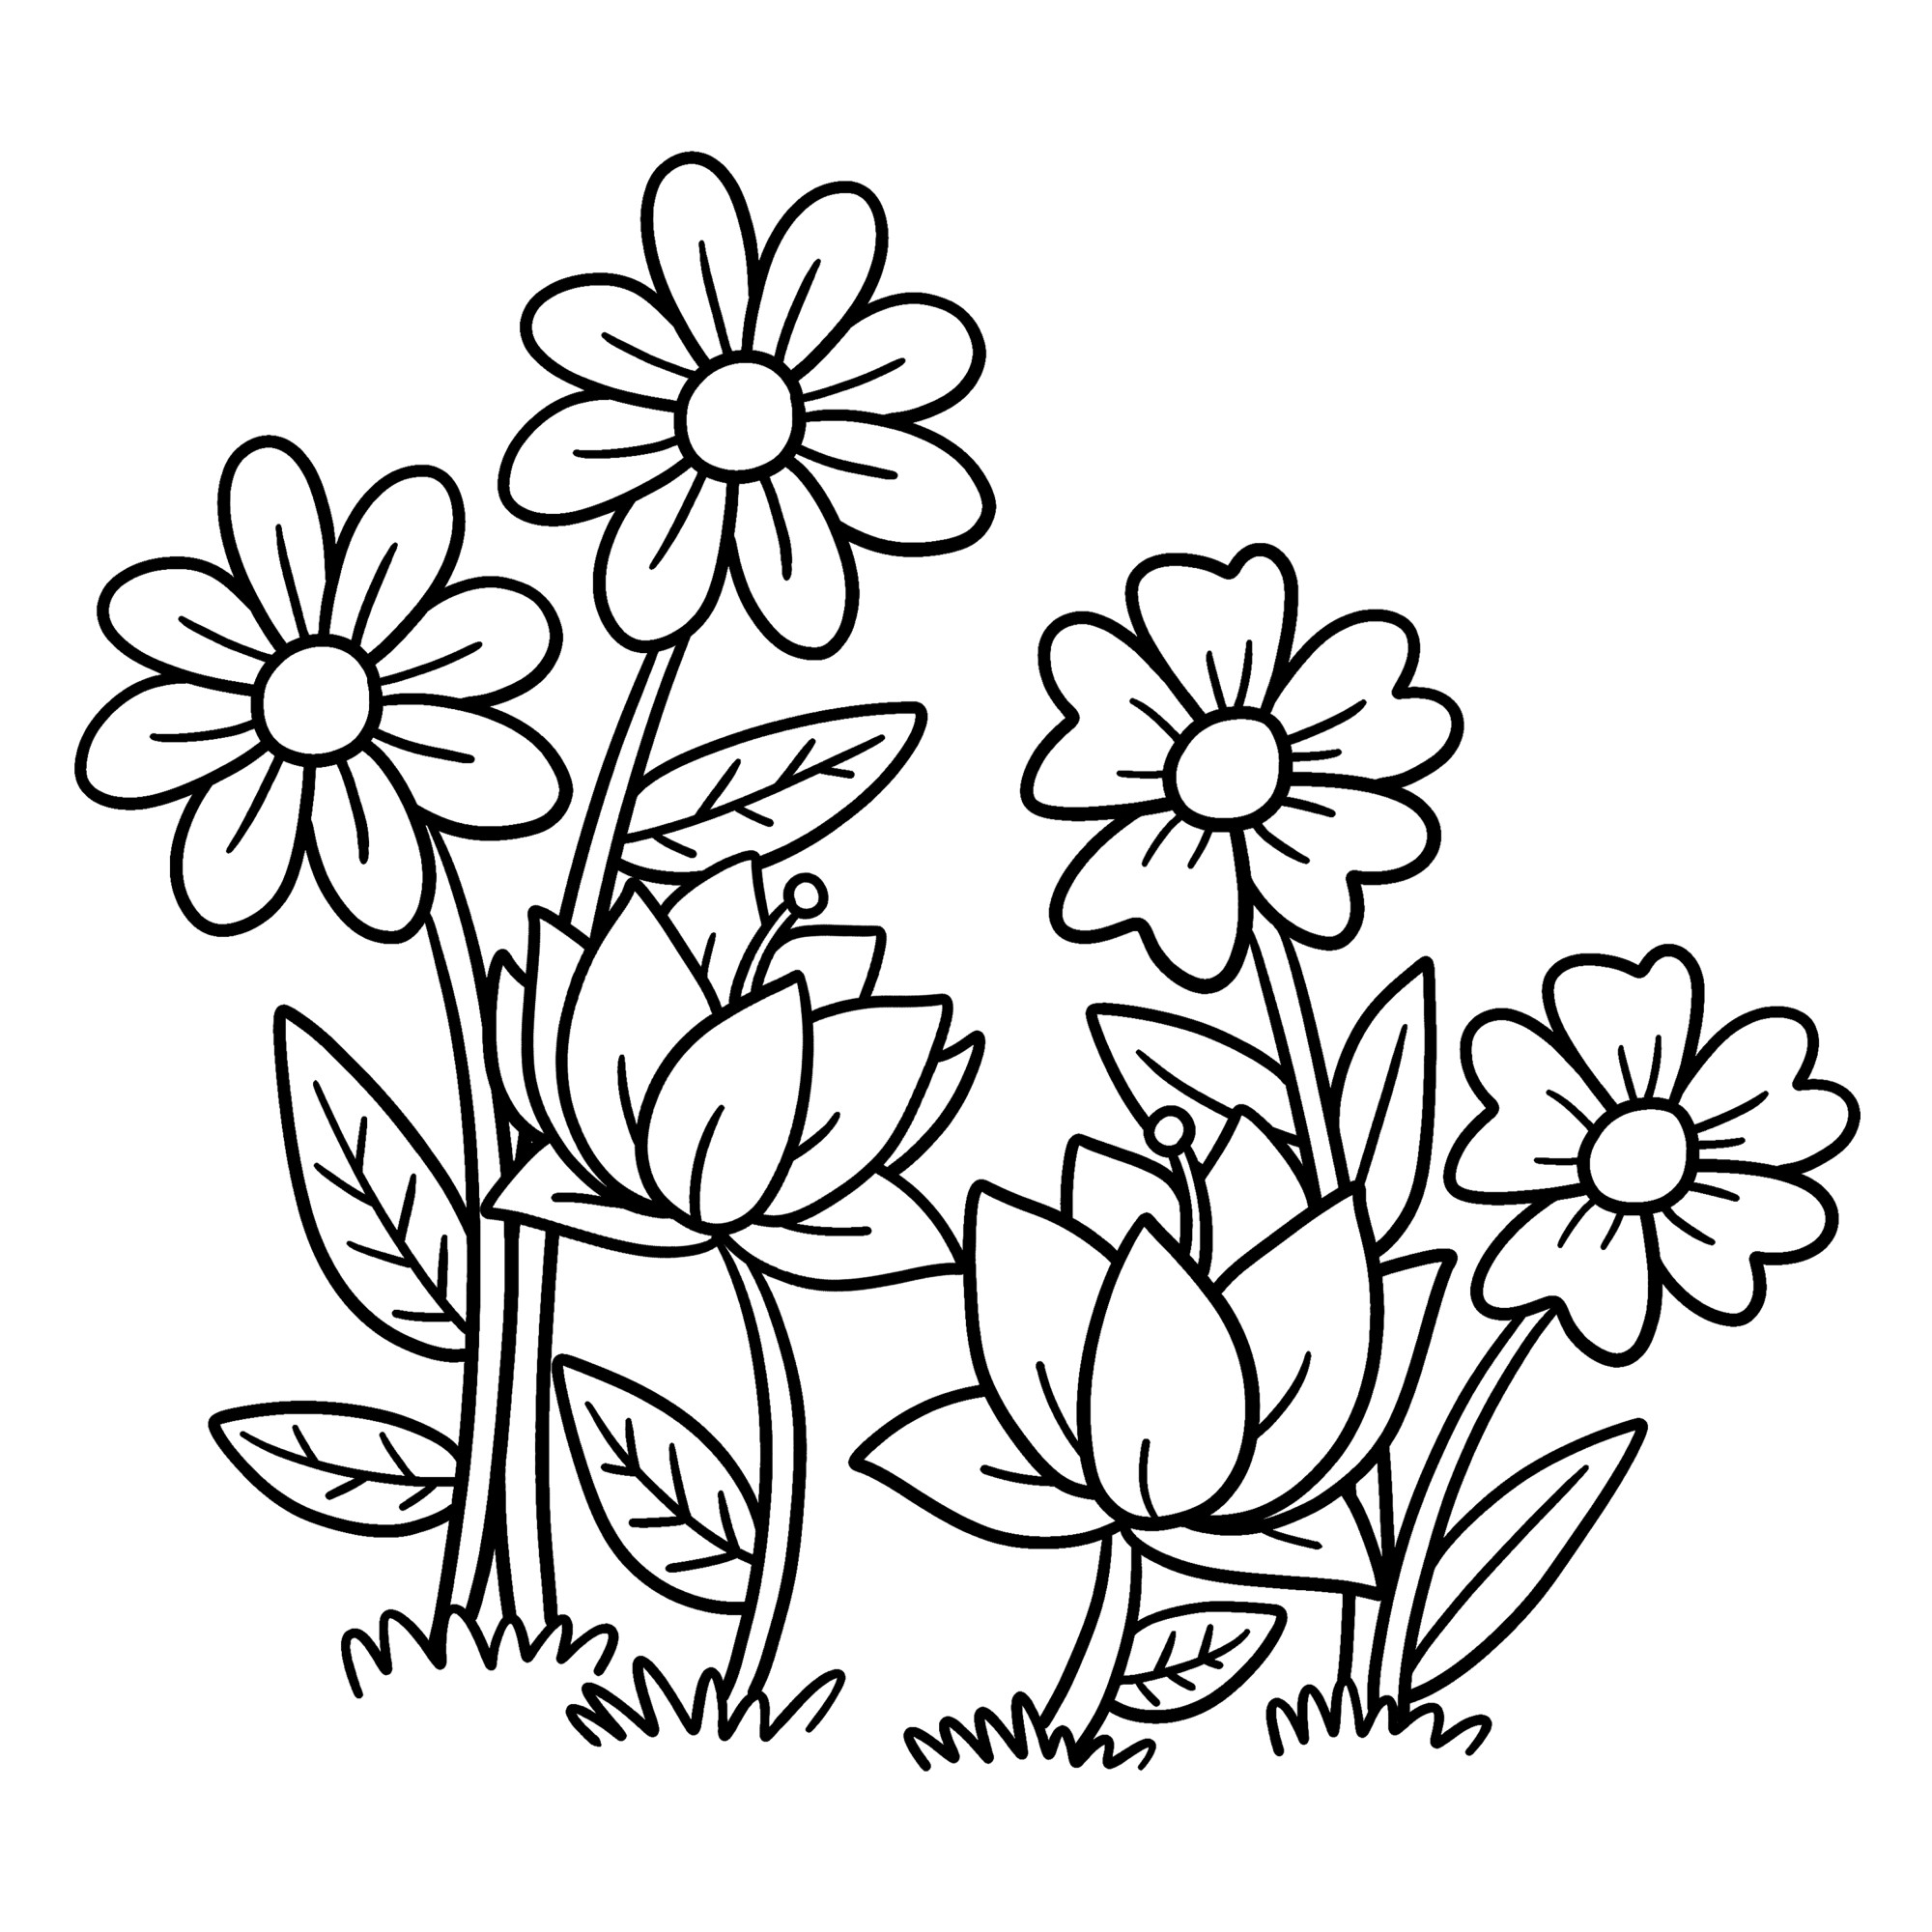 Раскраска для детей: весенние цветы